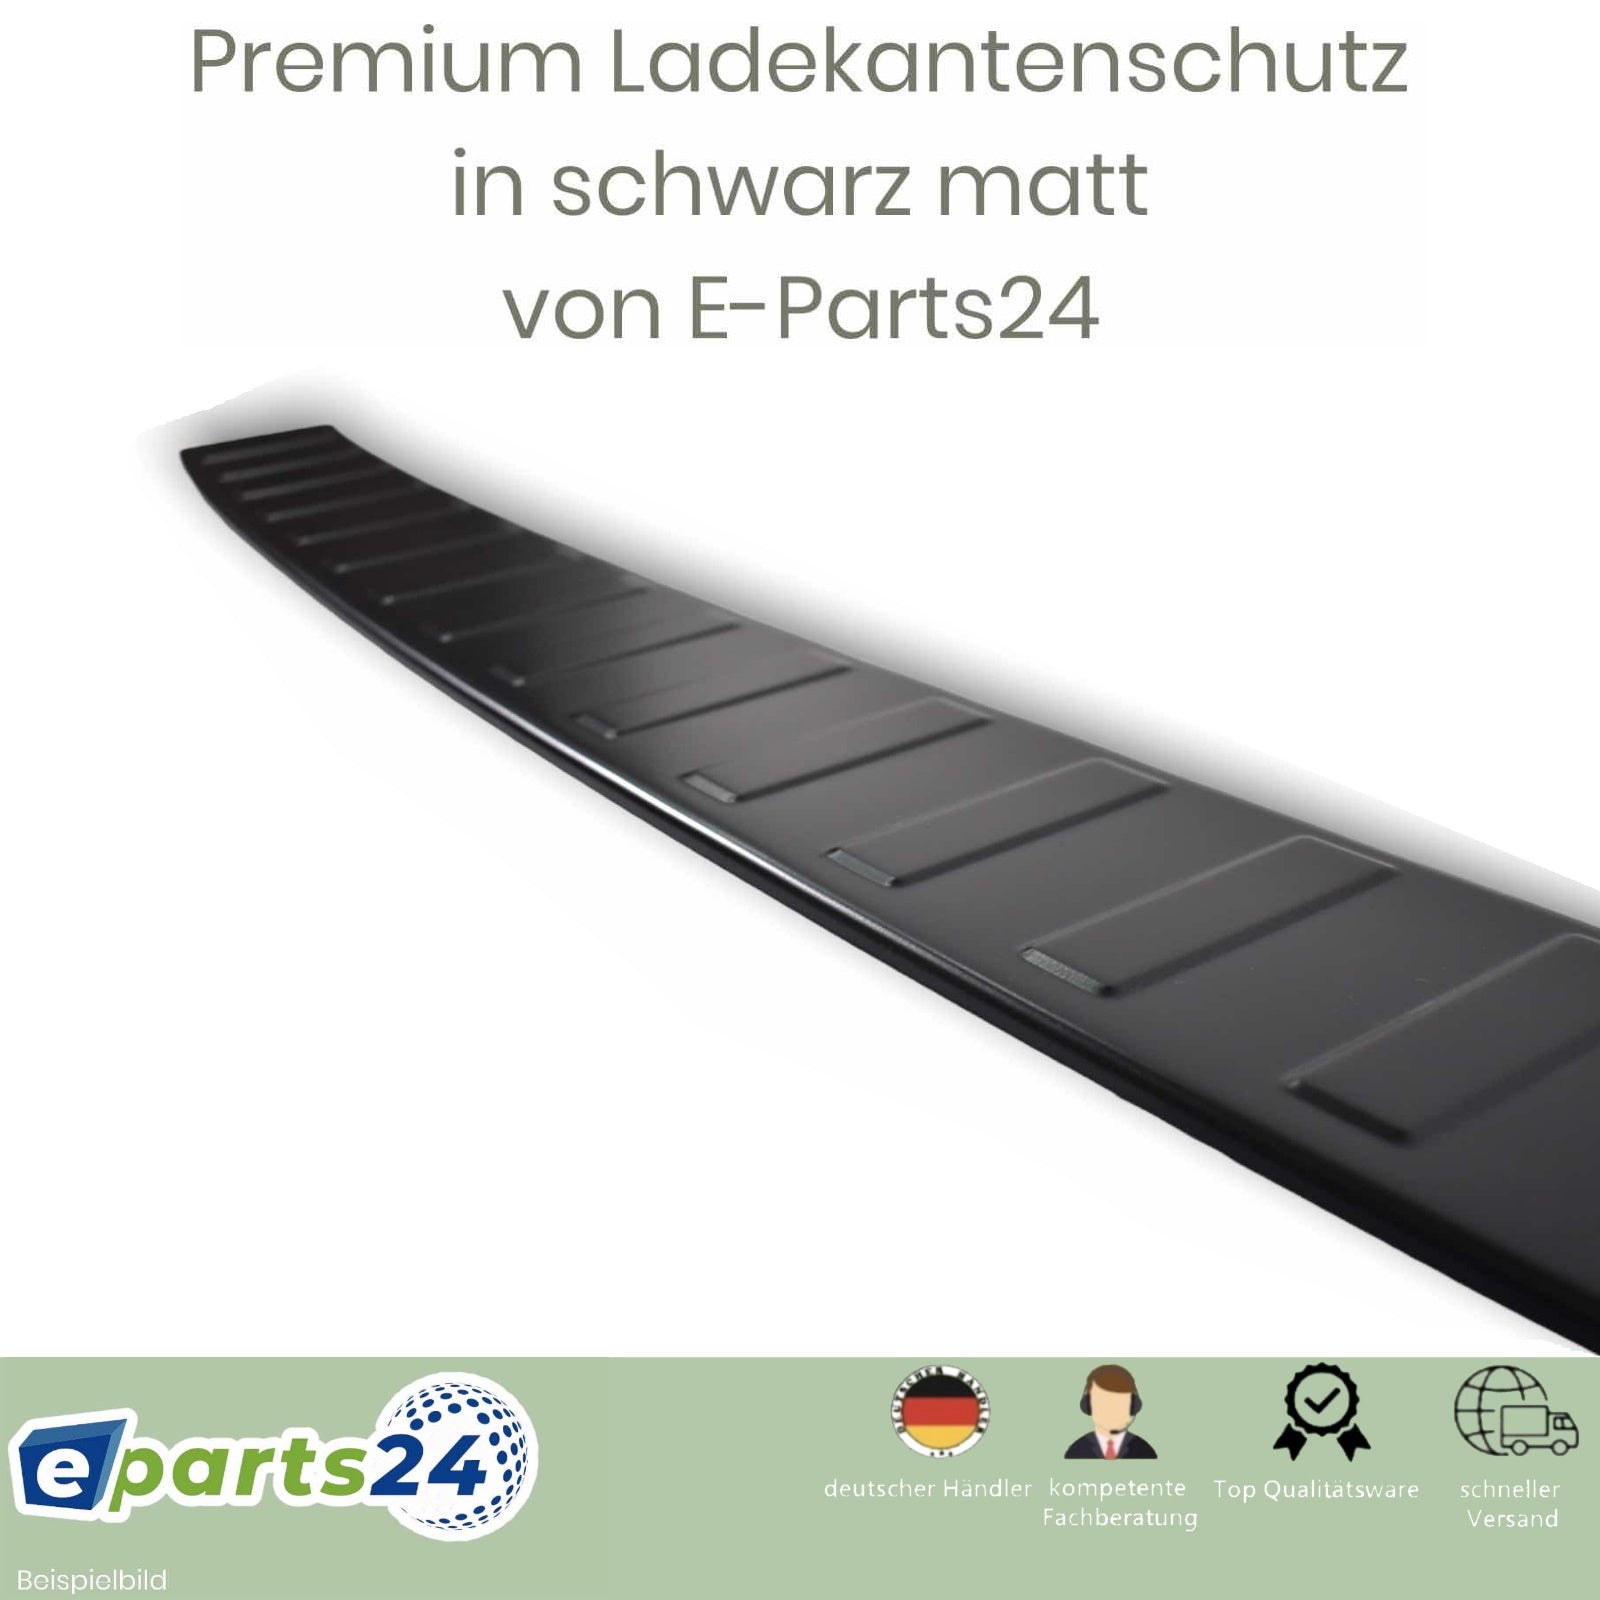 für Ladekantenschutz Premium T5 2003-2015 – Edelstahl E-Parts24 matt schwarz VW pu